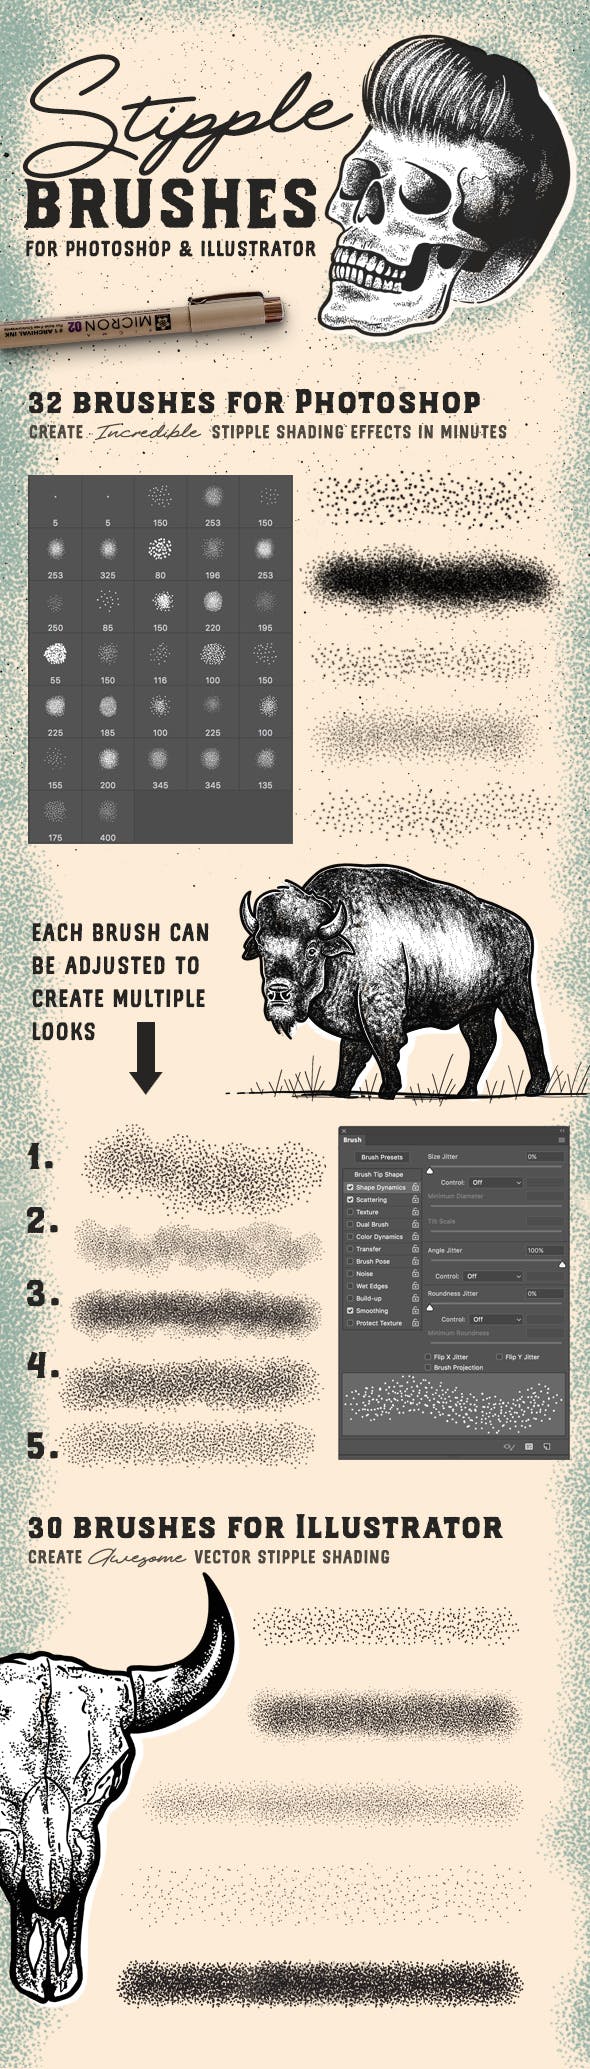 适用于Photoshop和Illustrator的点画笔套装 Stipple Brush Set for Photoshop and Illustrator插图